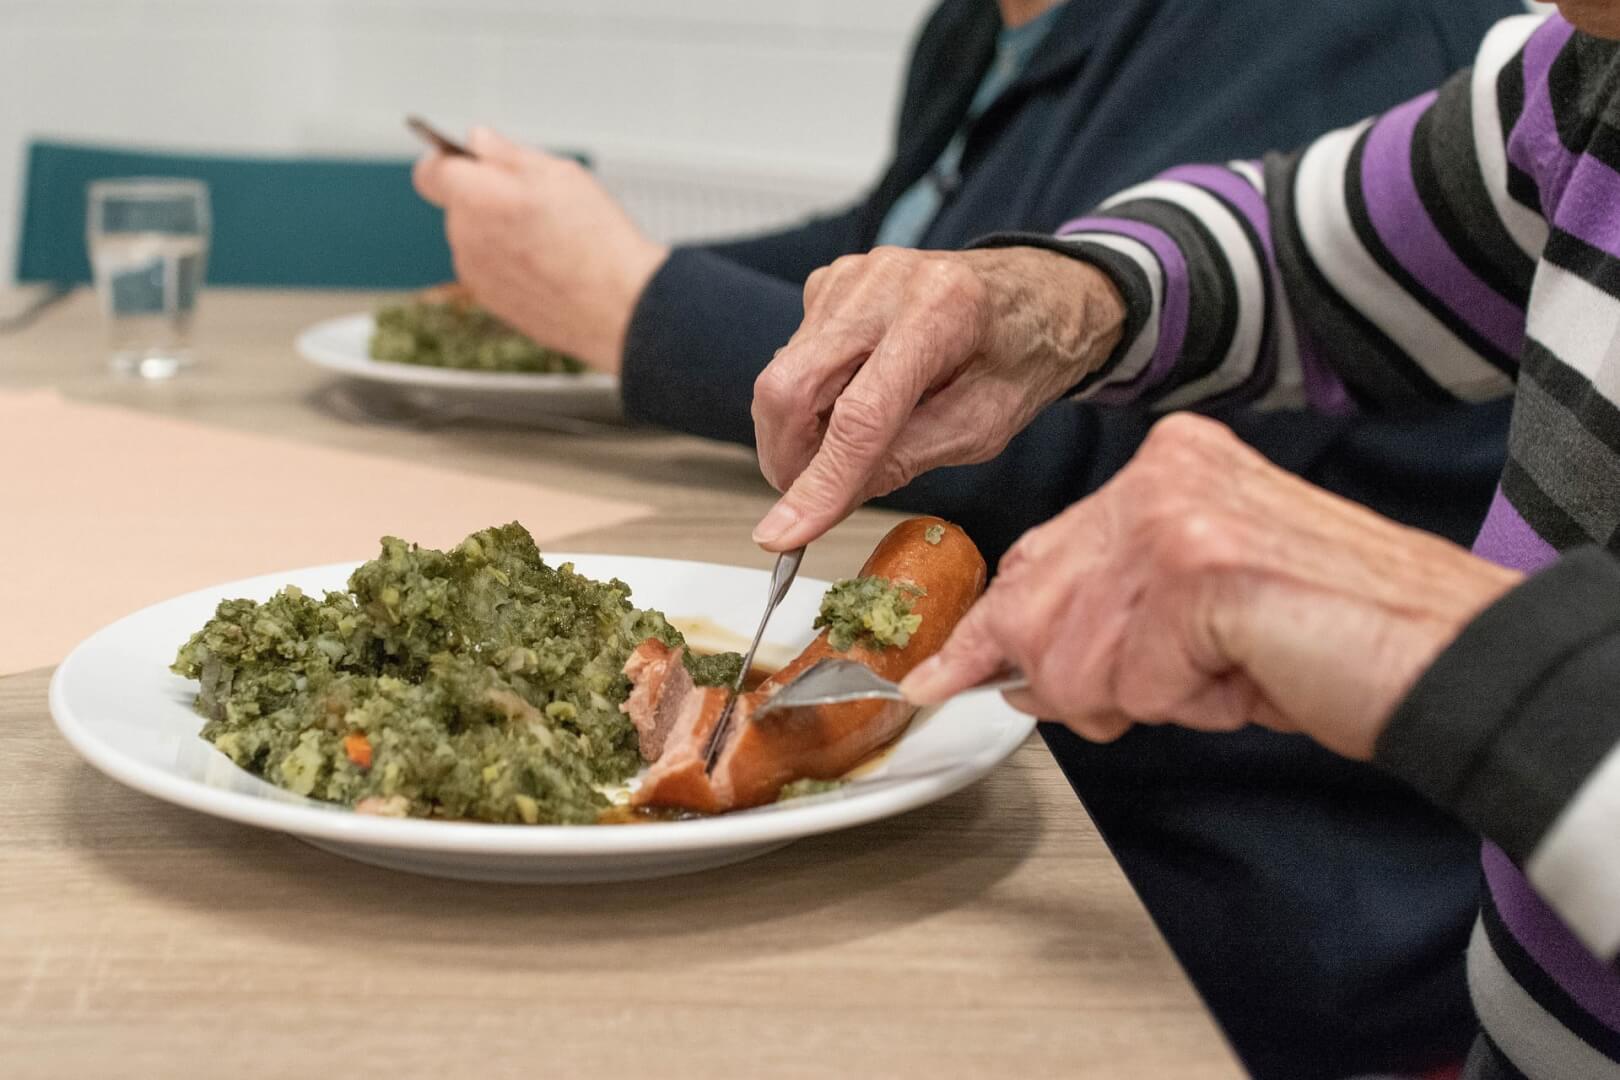 Un plano corto de un anciano comiendo un plato de comida con alto valor en colesterol.